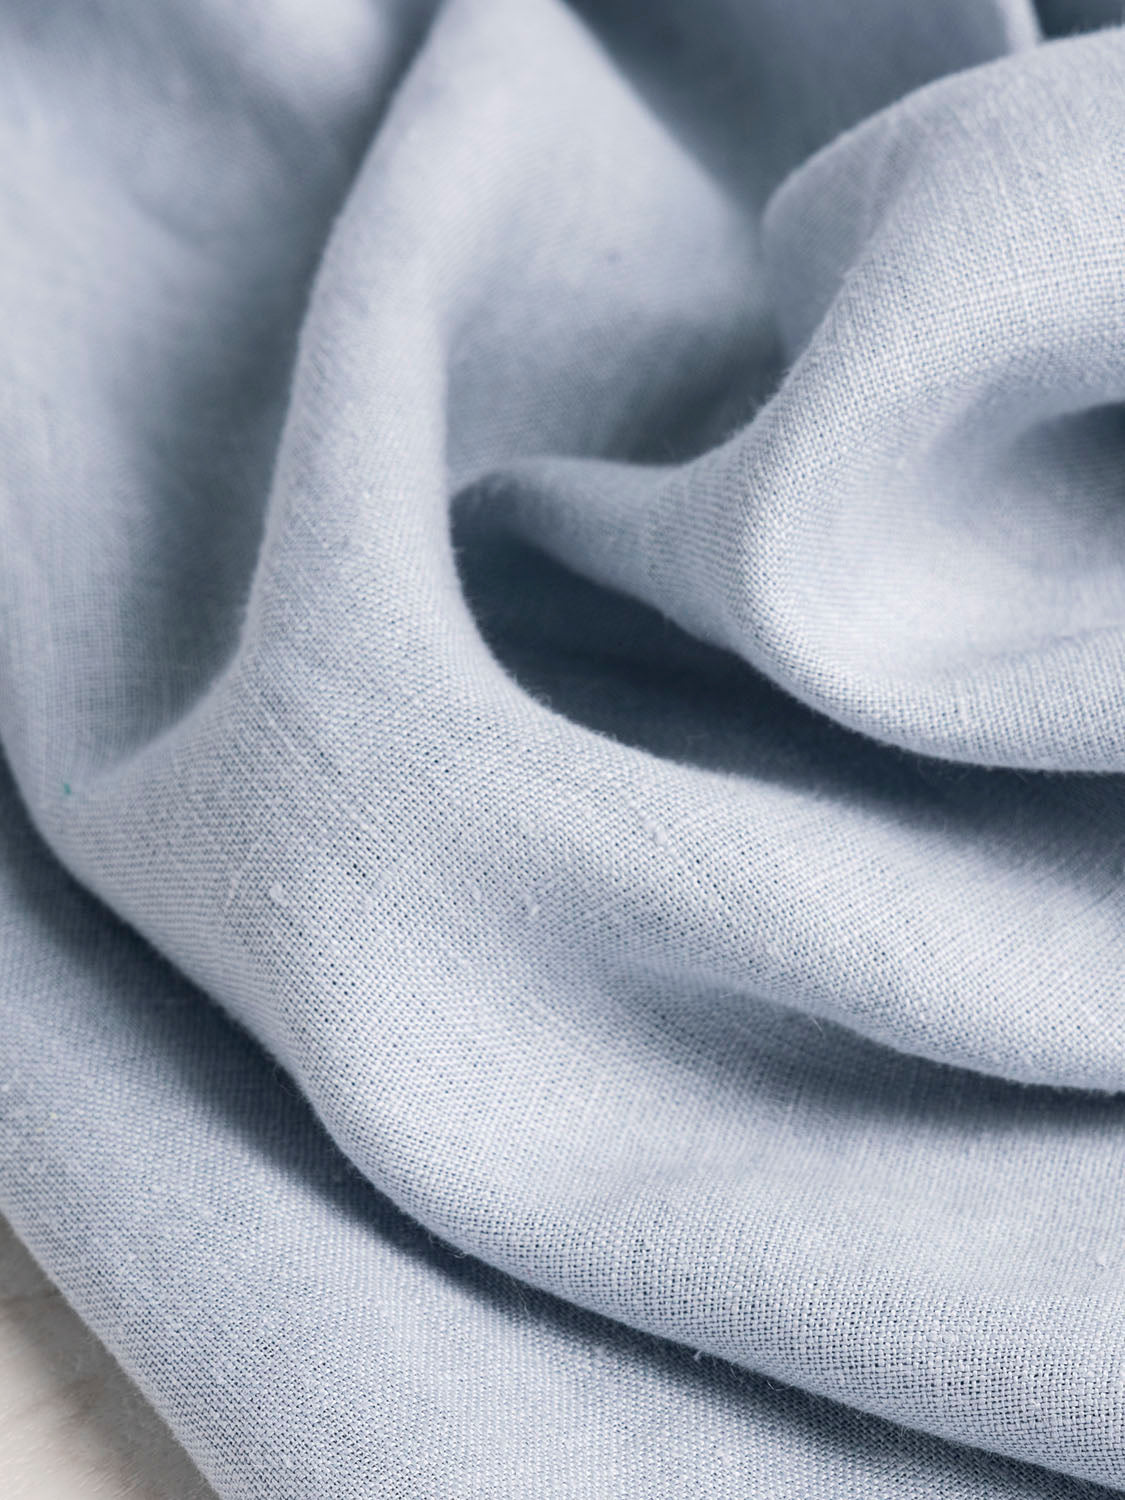 Midweight Linen - Light Blue | Core Fabrics